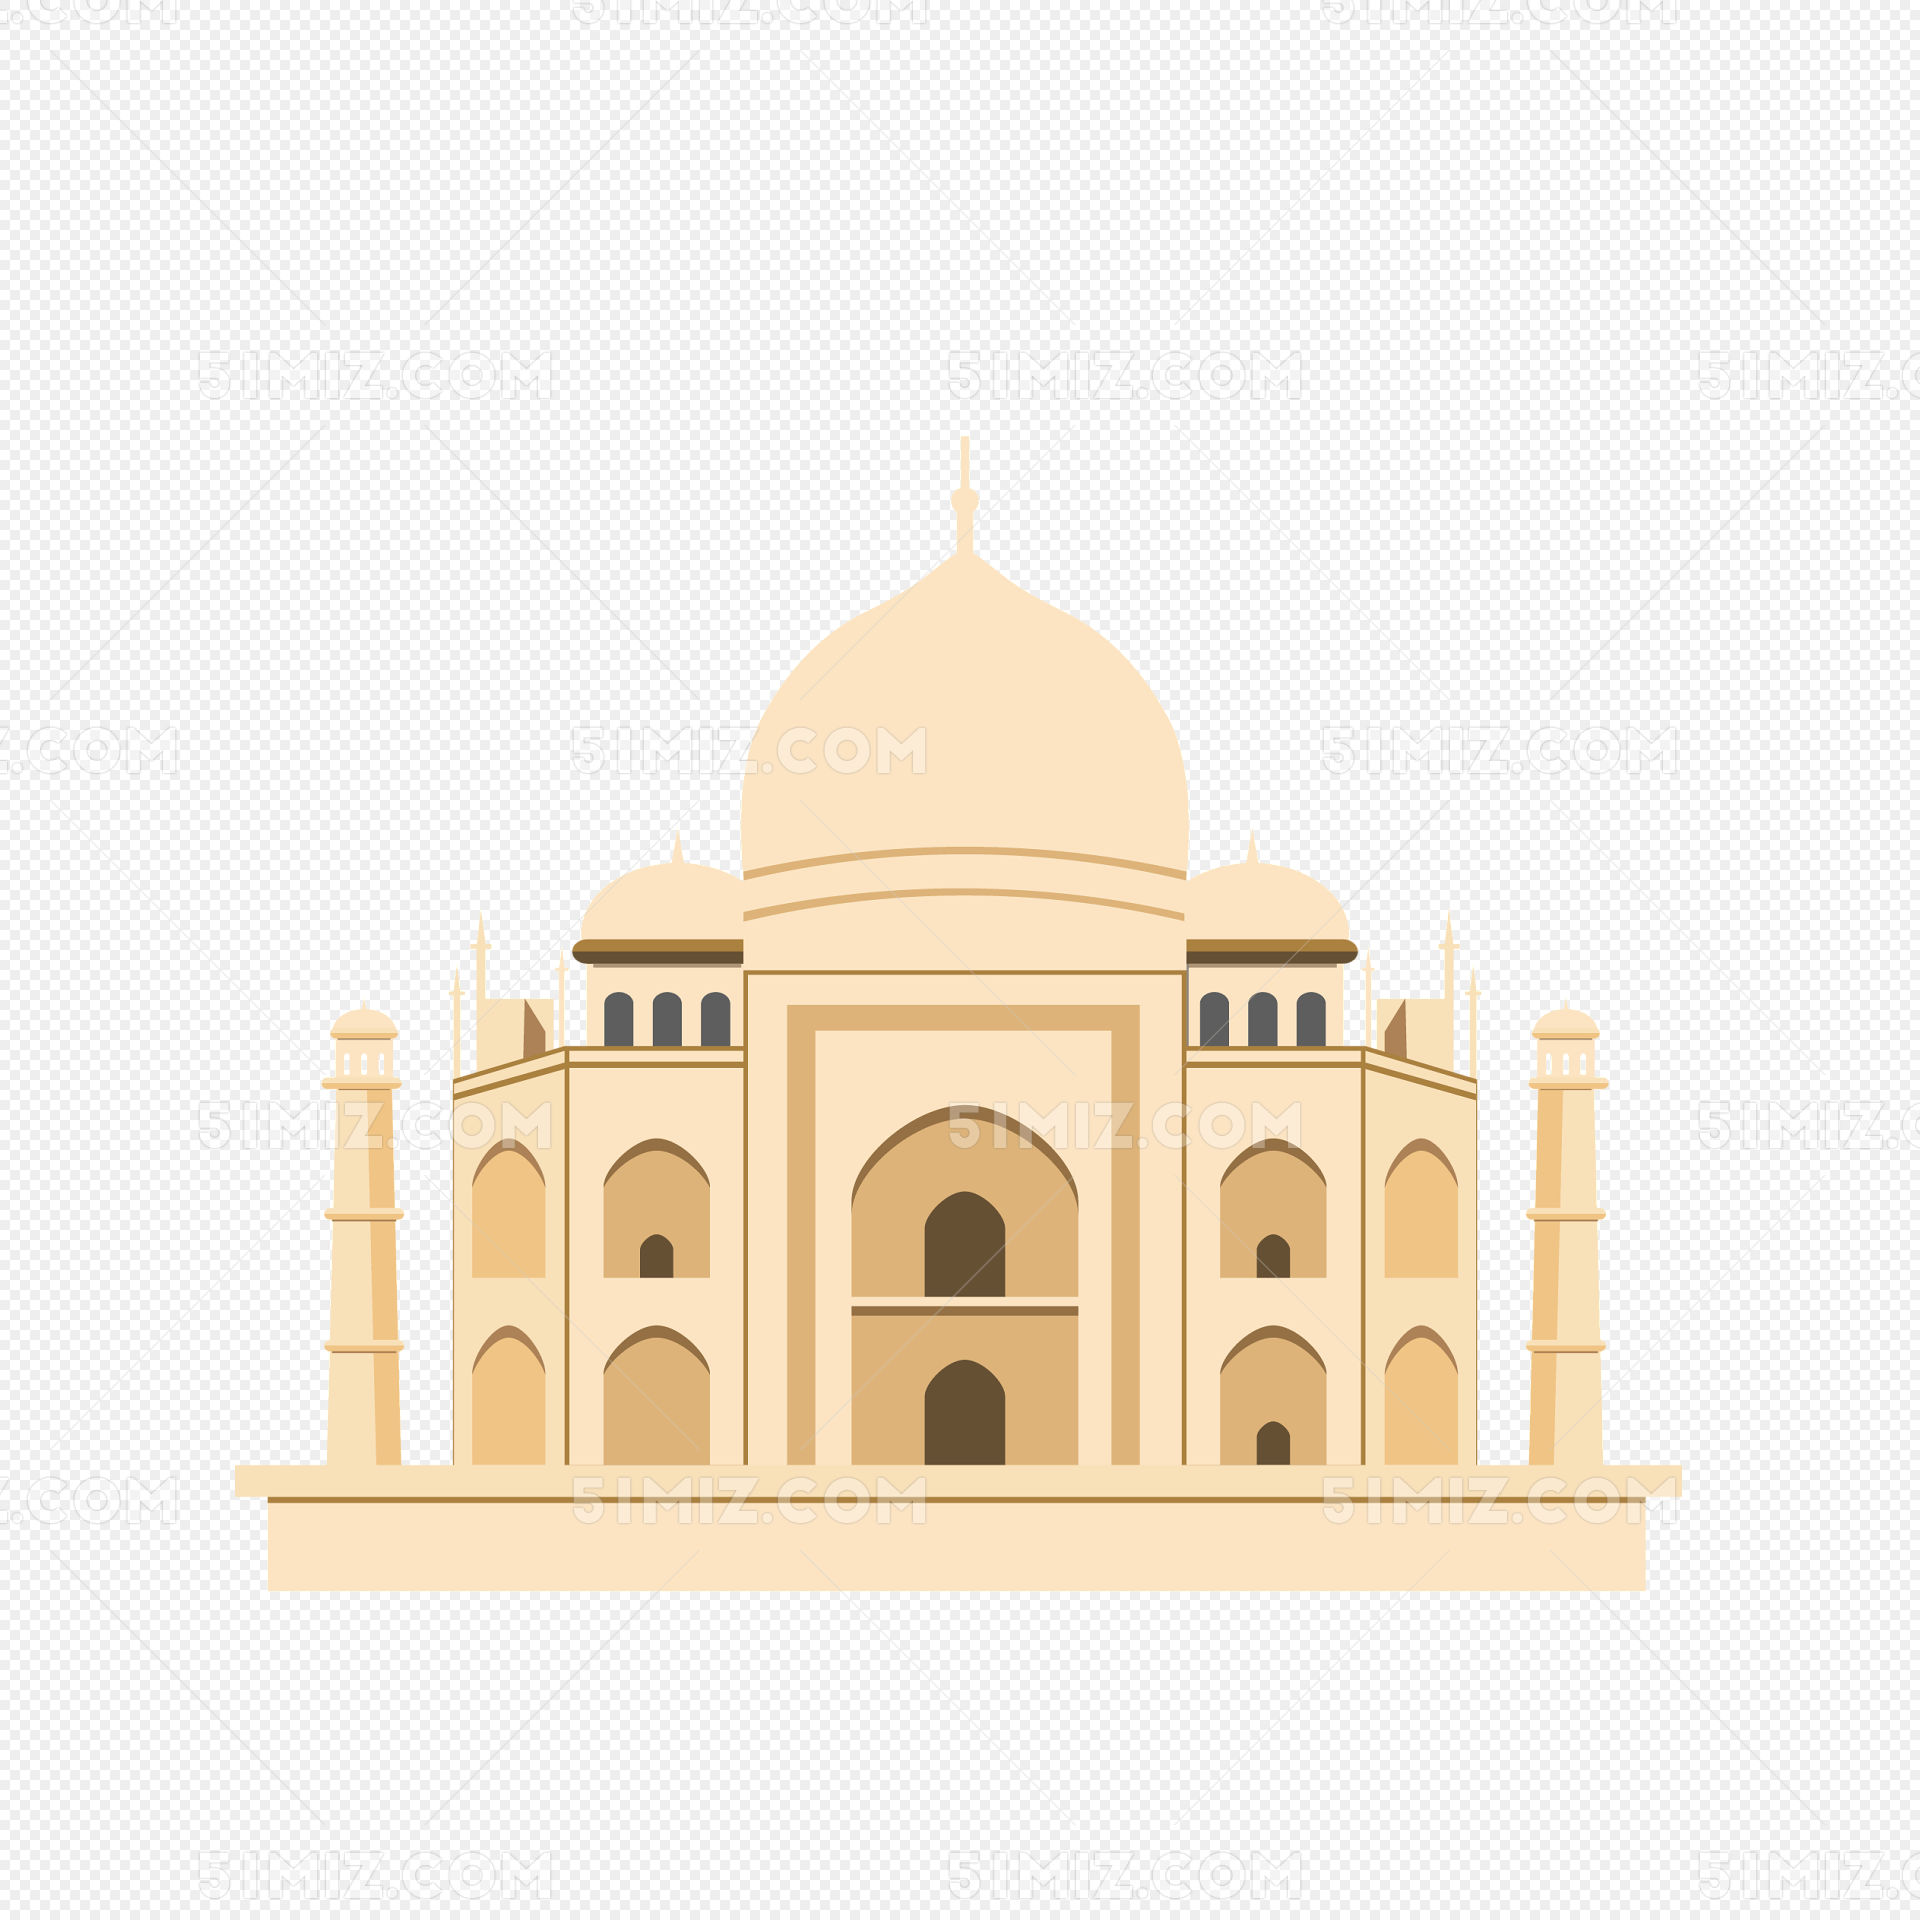 印度古建筑泰姬陵